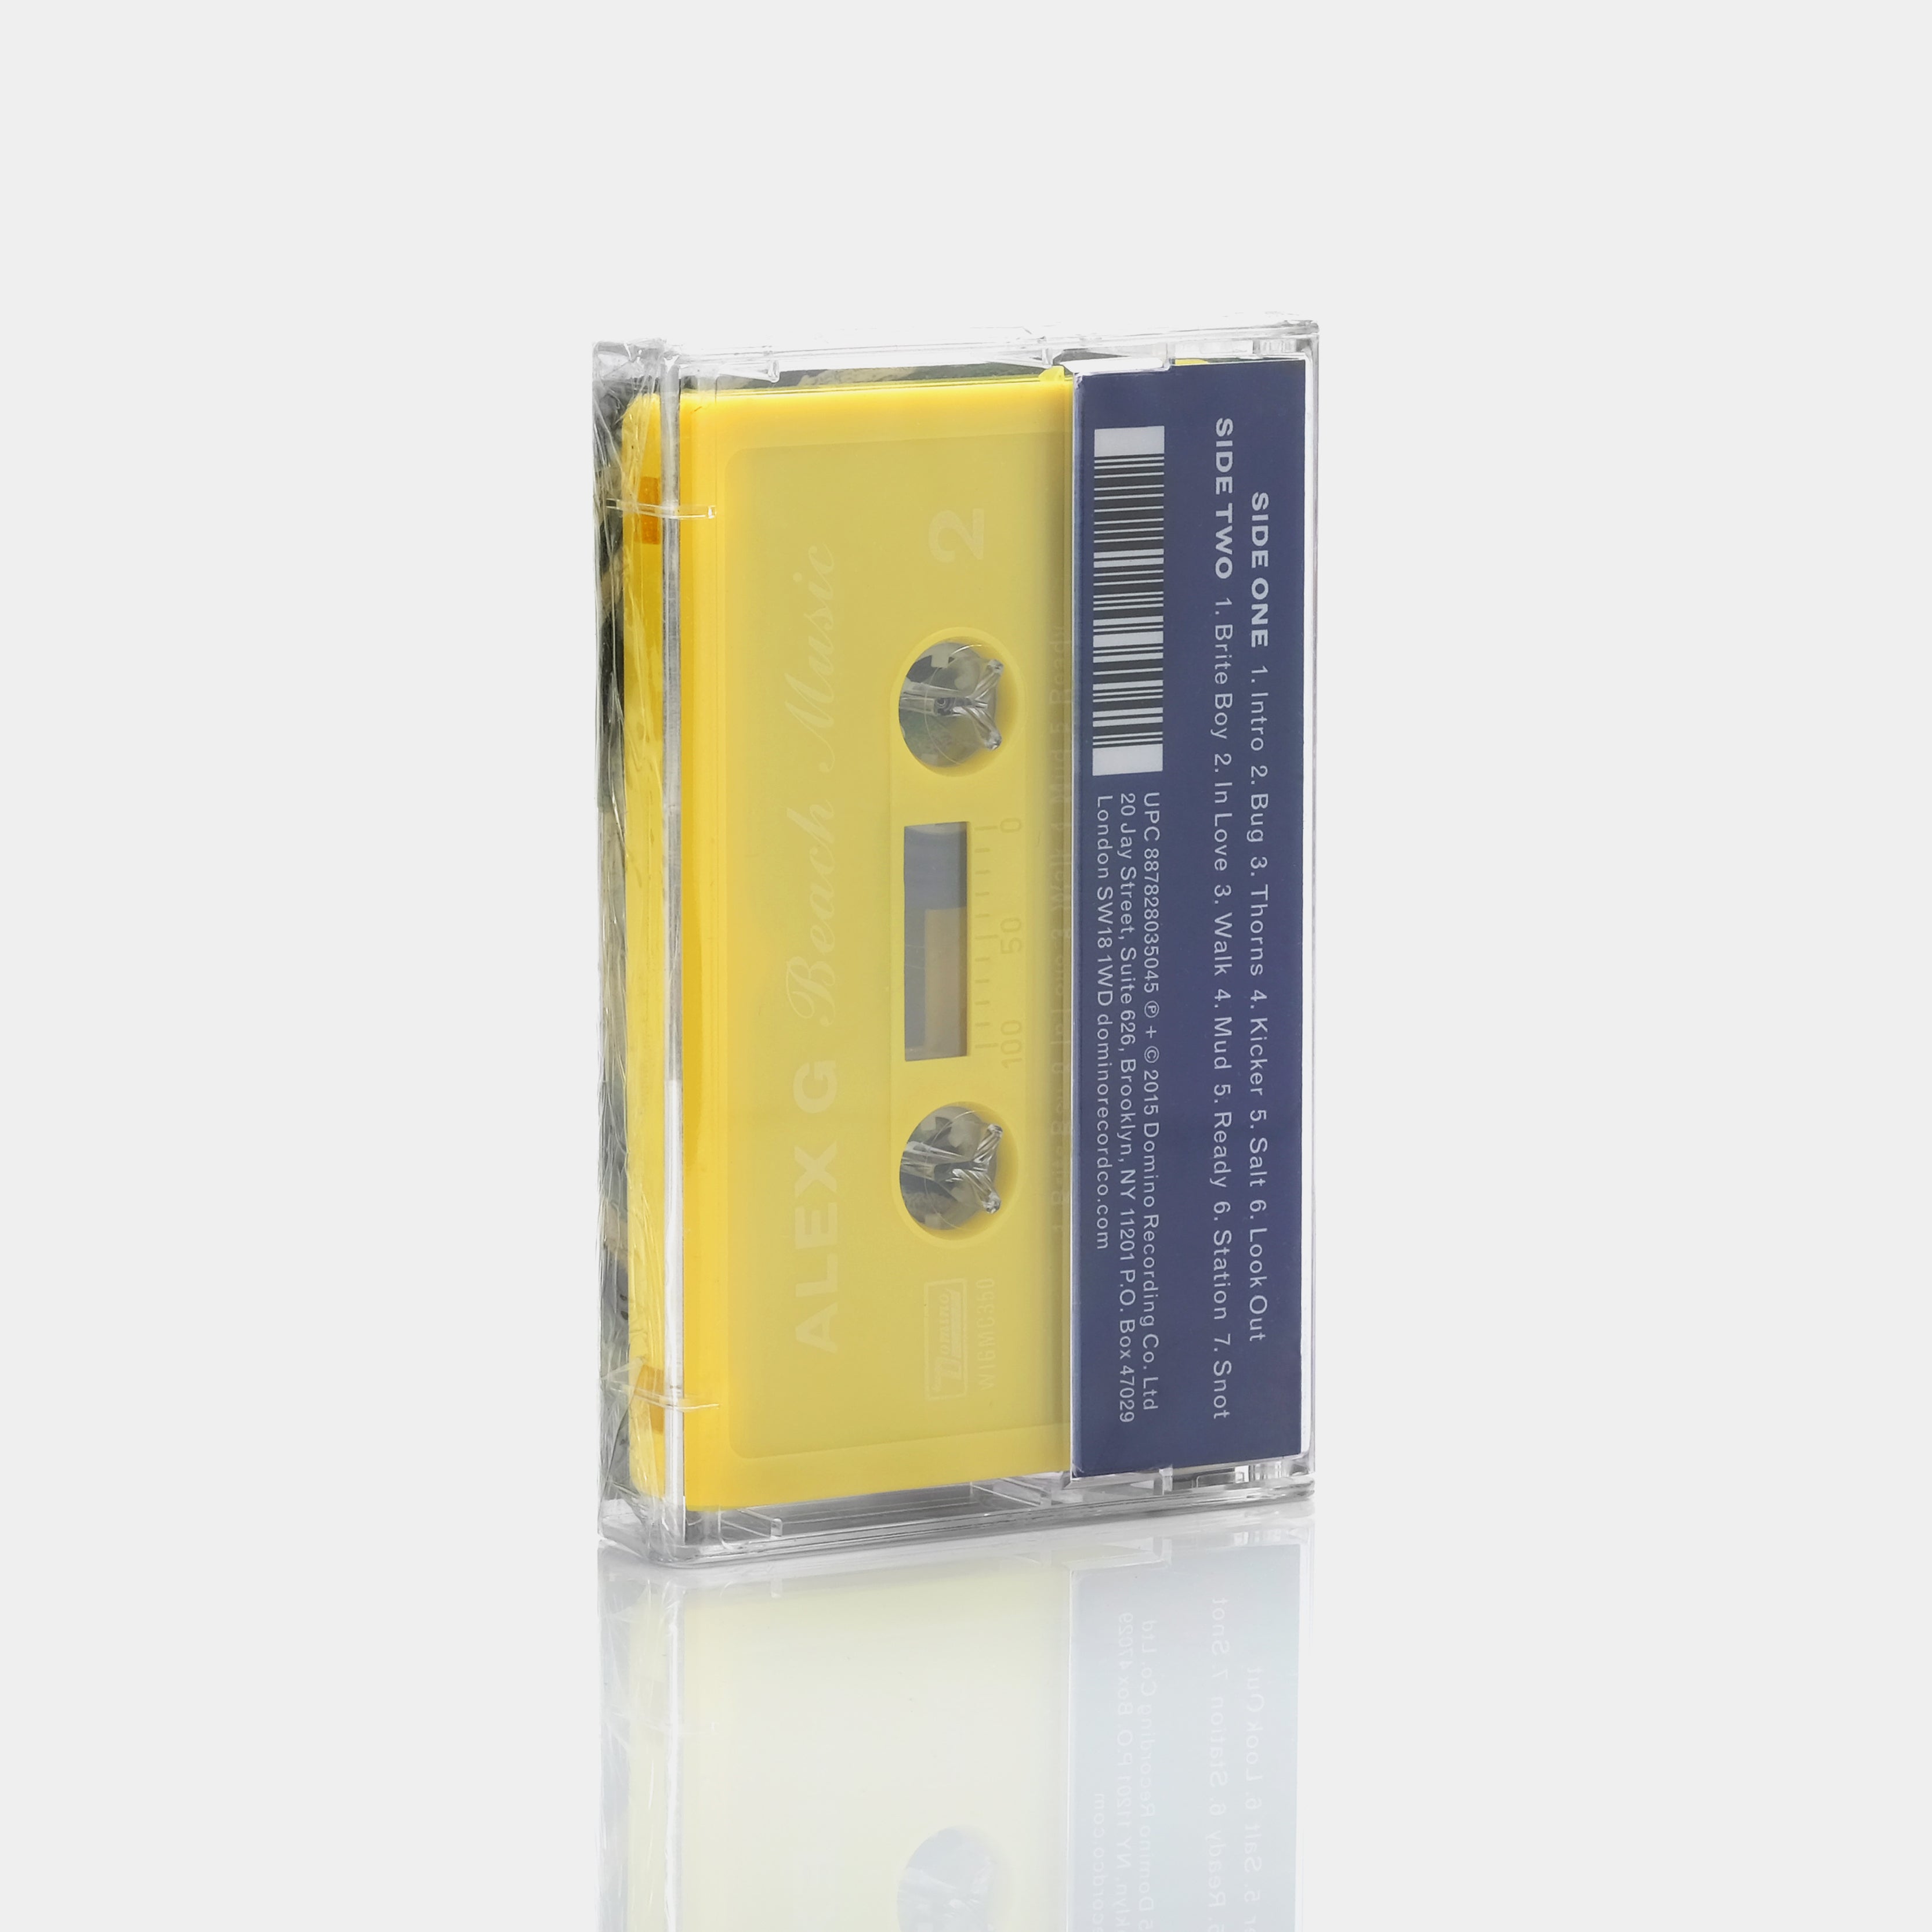 Alex G - Beach Music Cassette Tape